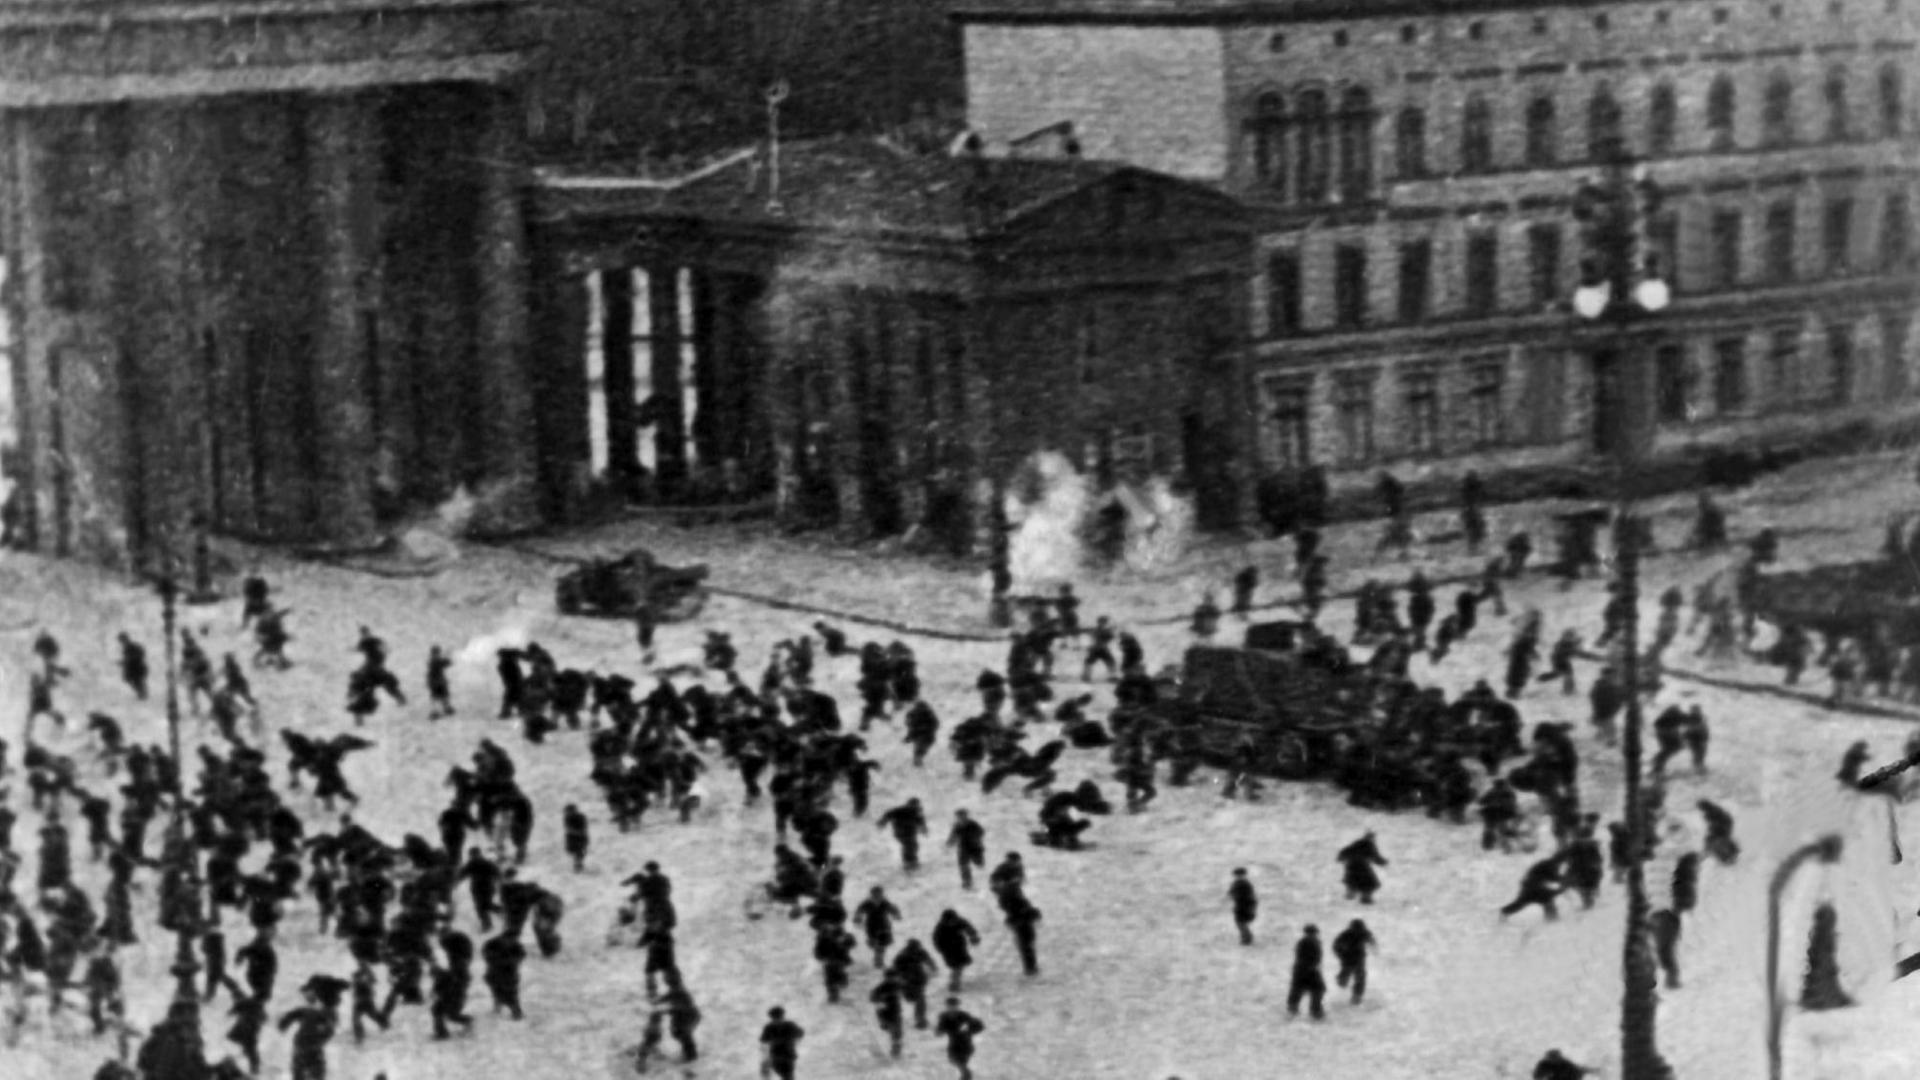 Foto der Schießerei am Pariser Platz beim Abzug der Baltikumtruppen im März 1920, der etwa zwölf Menschleben zum Opfer fielen.